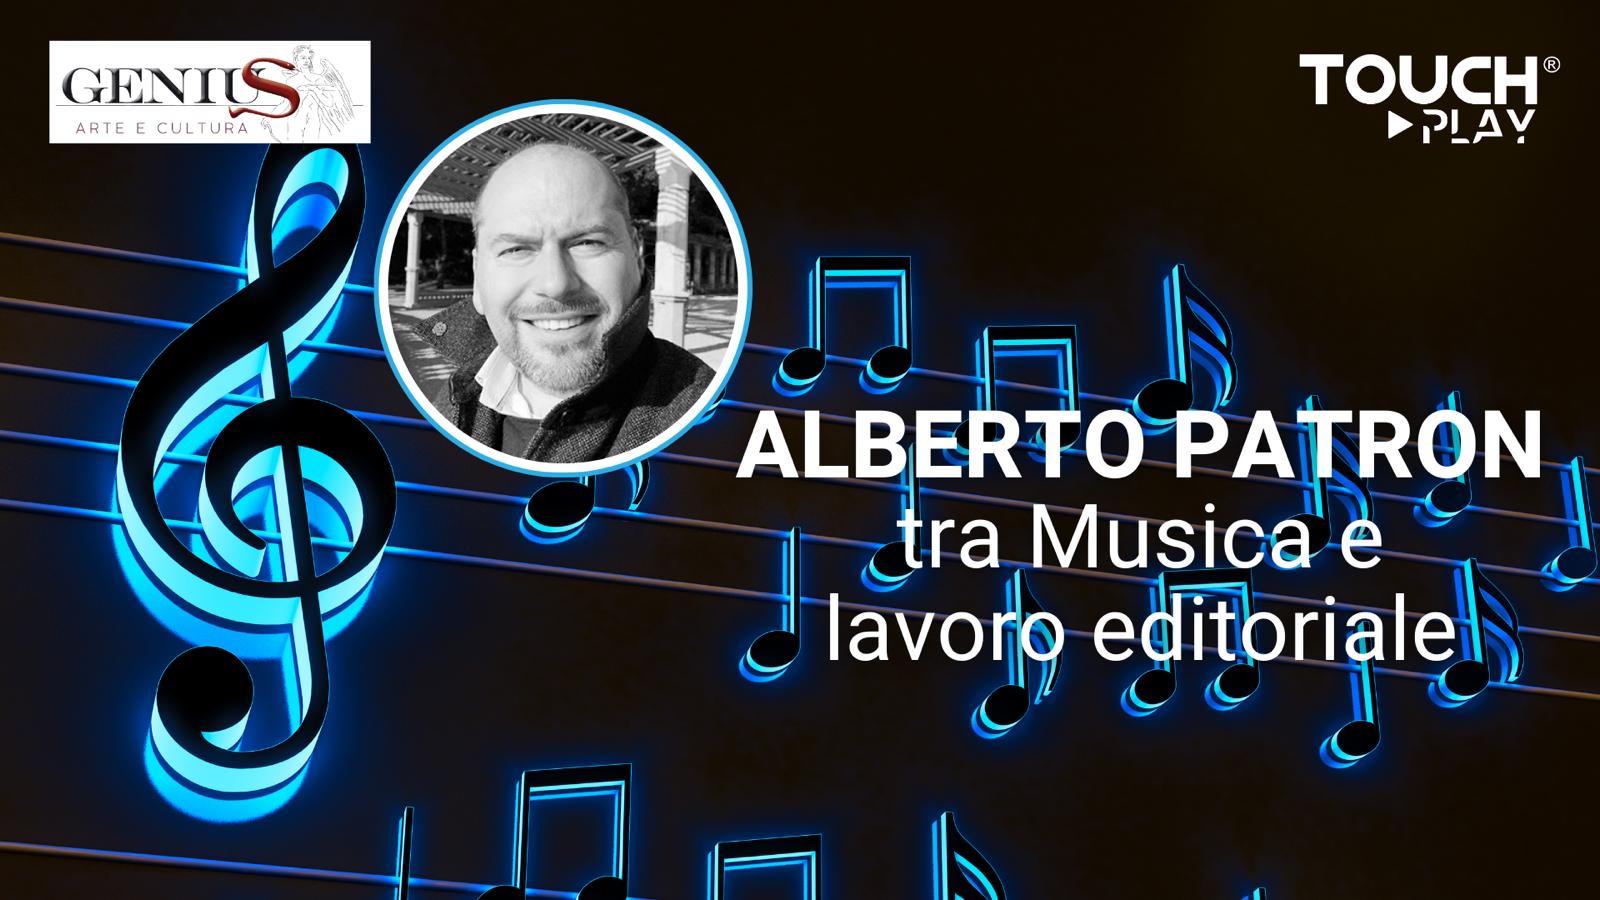 Alberto Patron tra Musica e lavoro editoriale